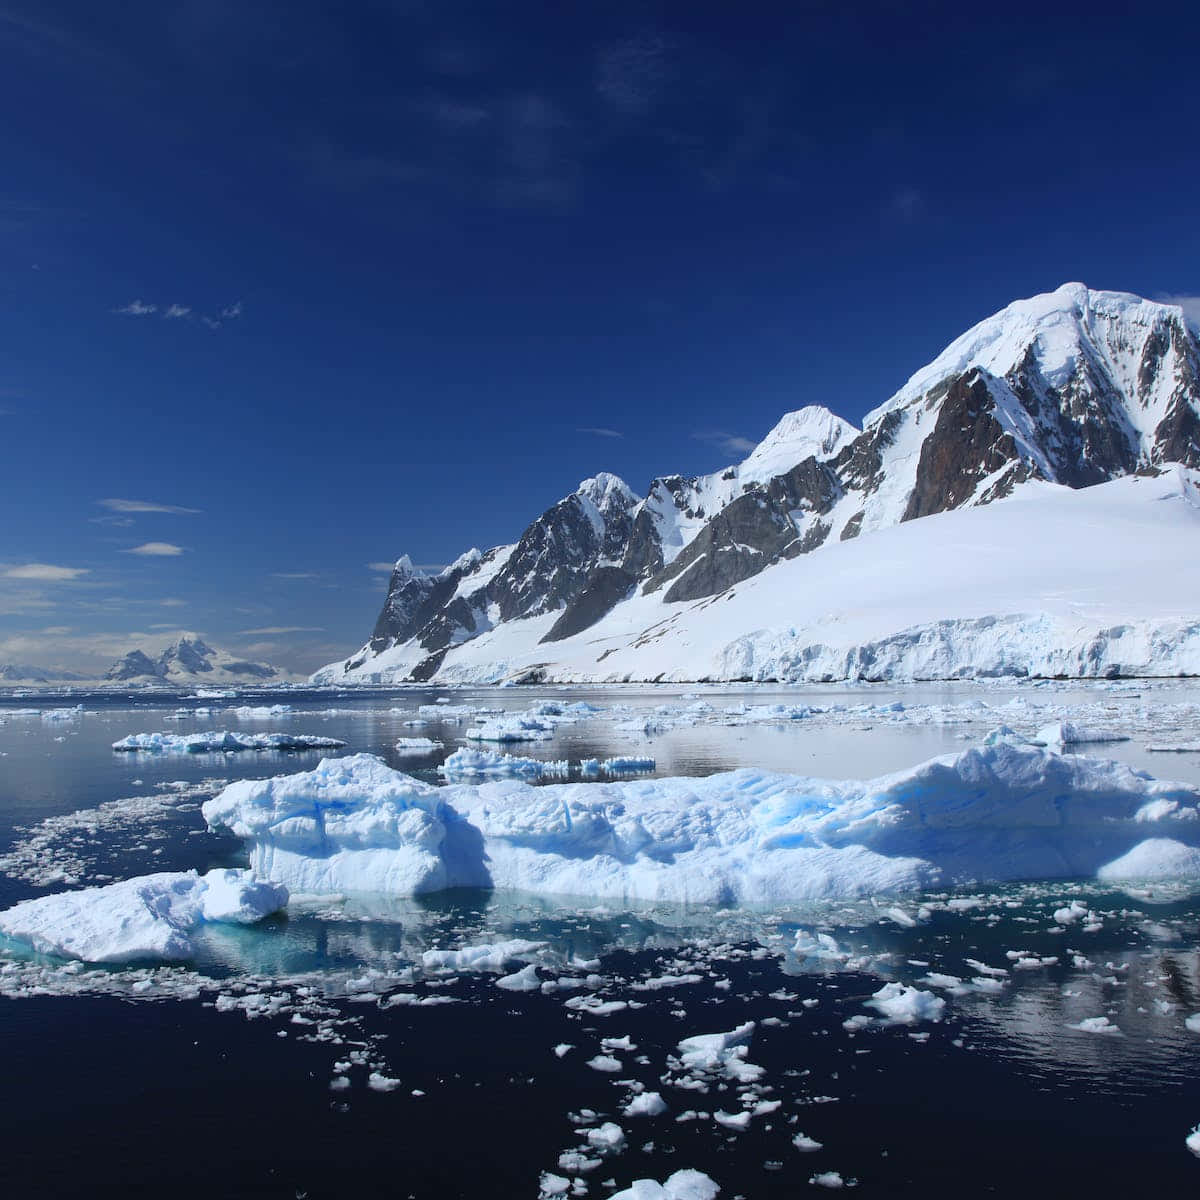 Impresionantevista Del Helado Continente De La Antártida.